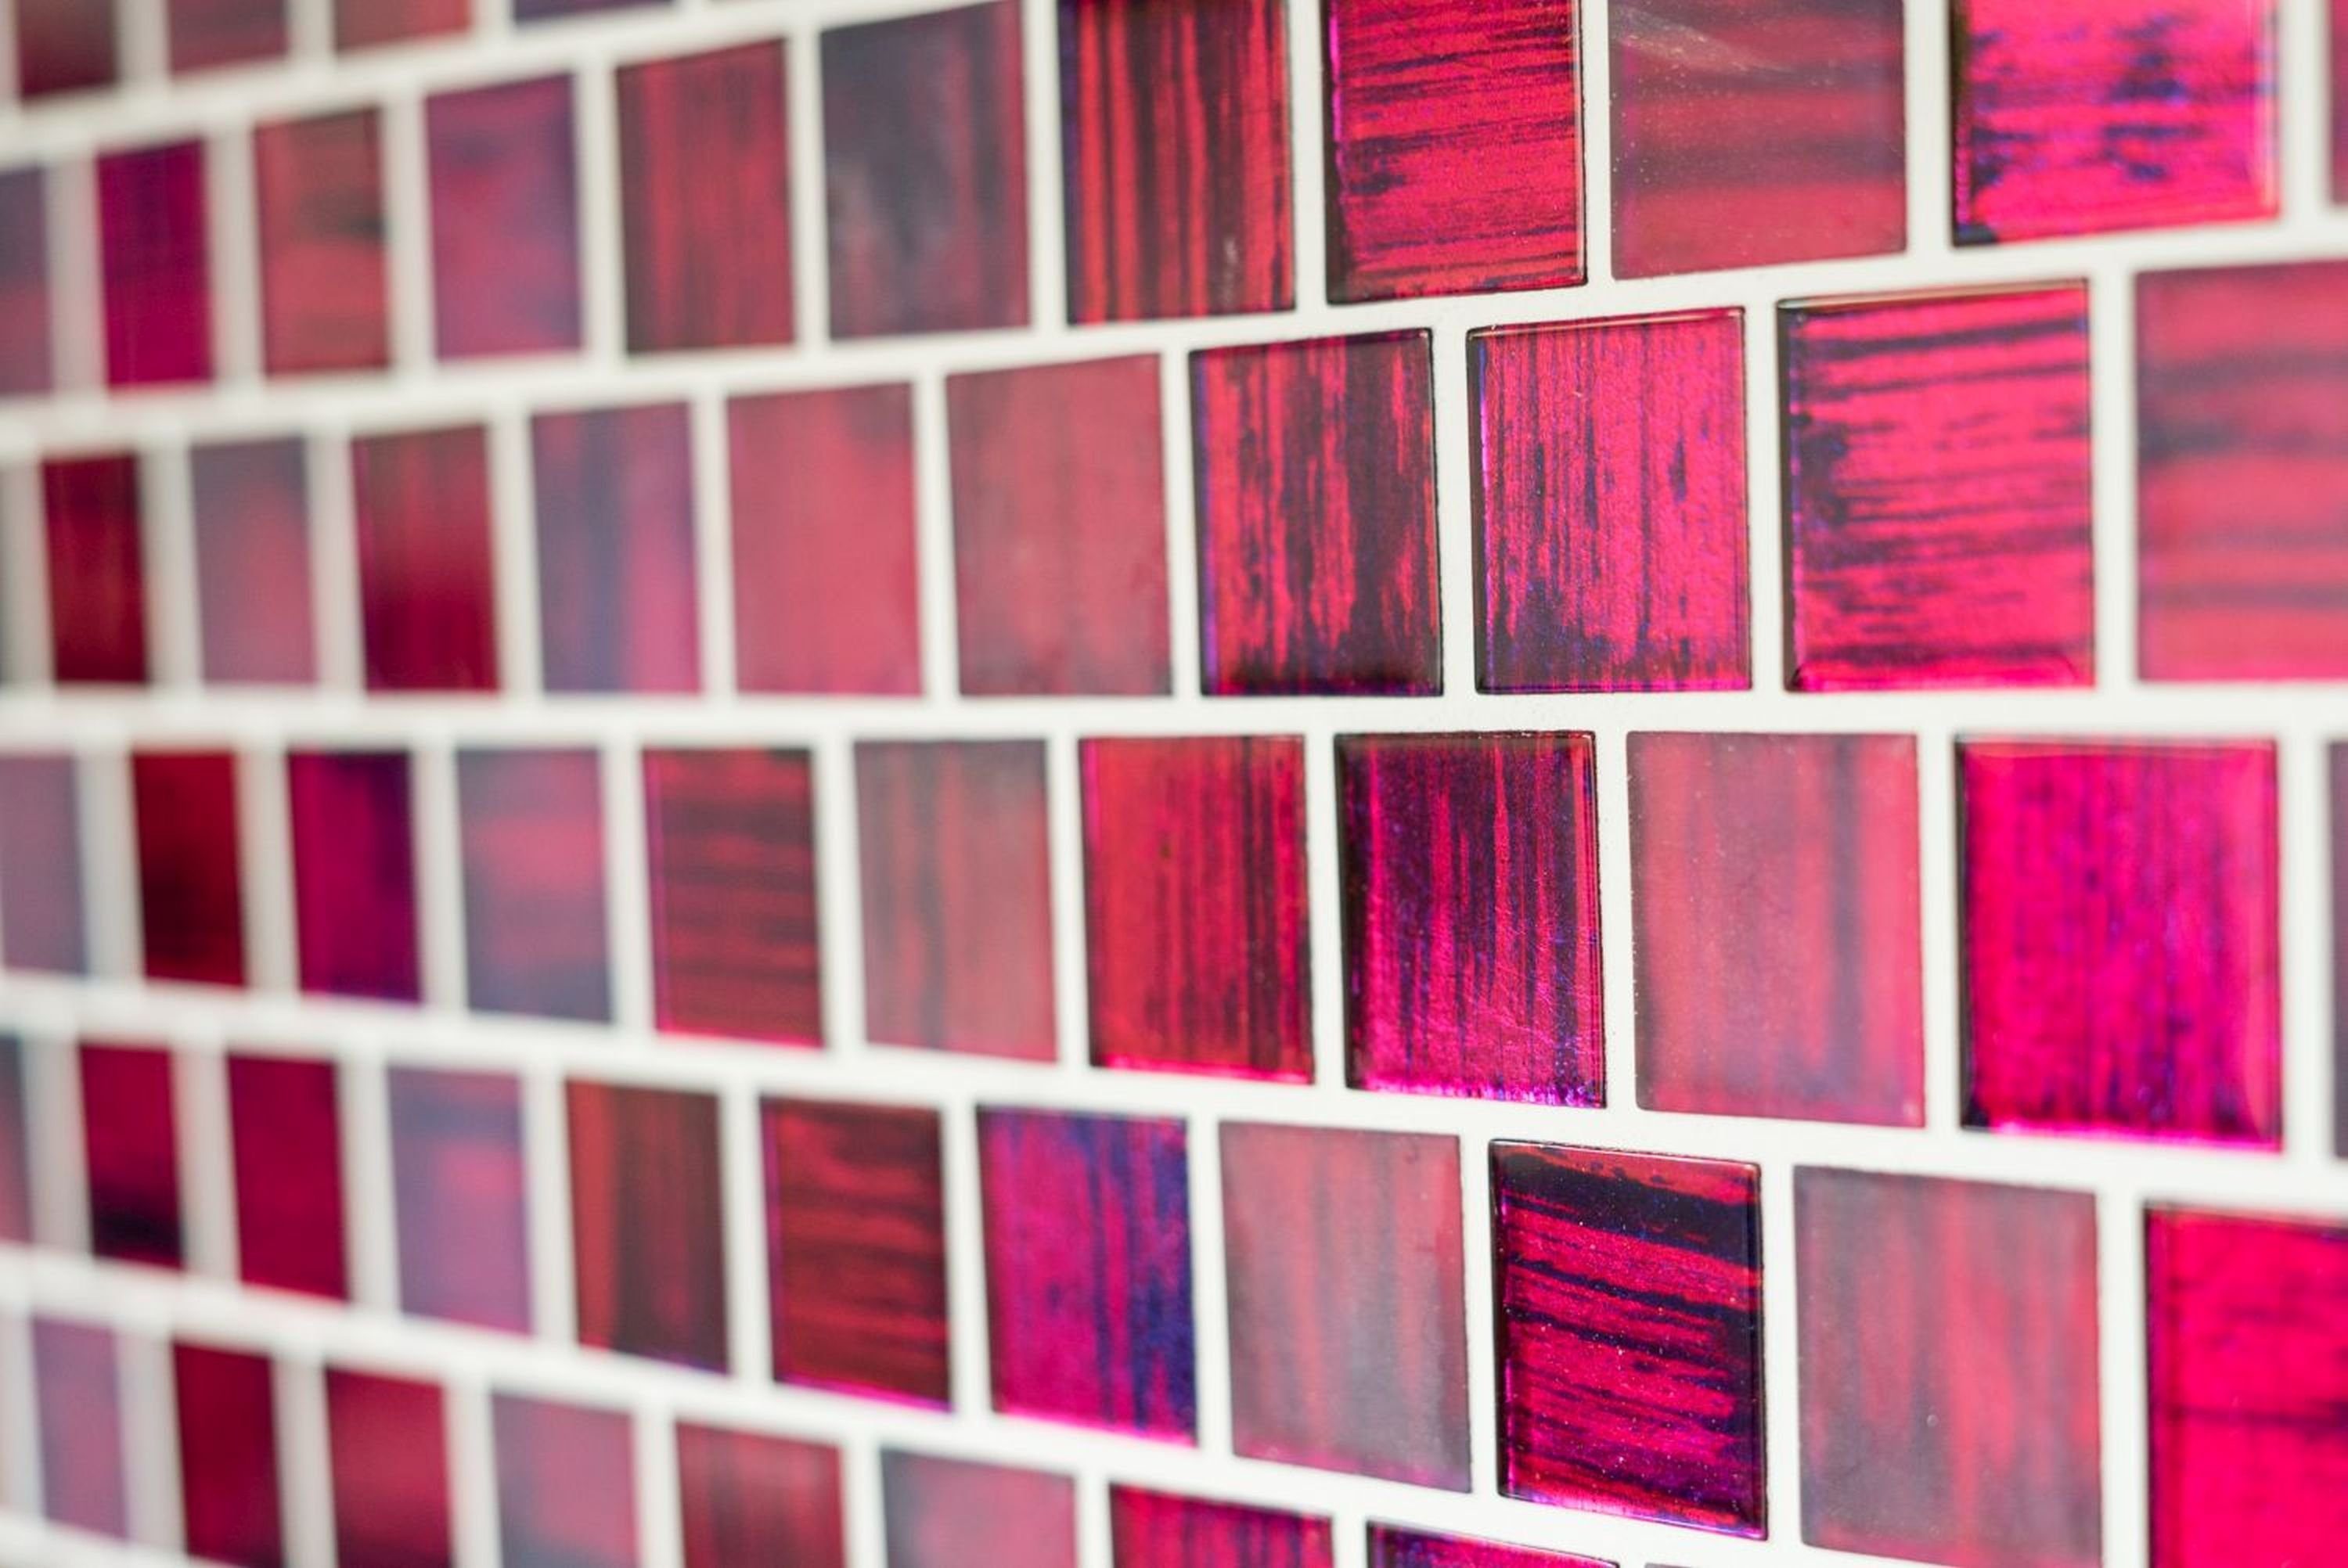 matt Crystal Mosani klar Mosaikfliesen pink Milchglas Fliese Glasmosaik Mosaik